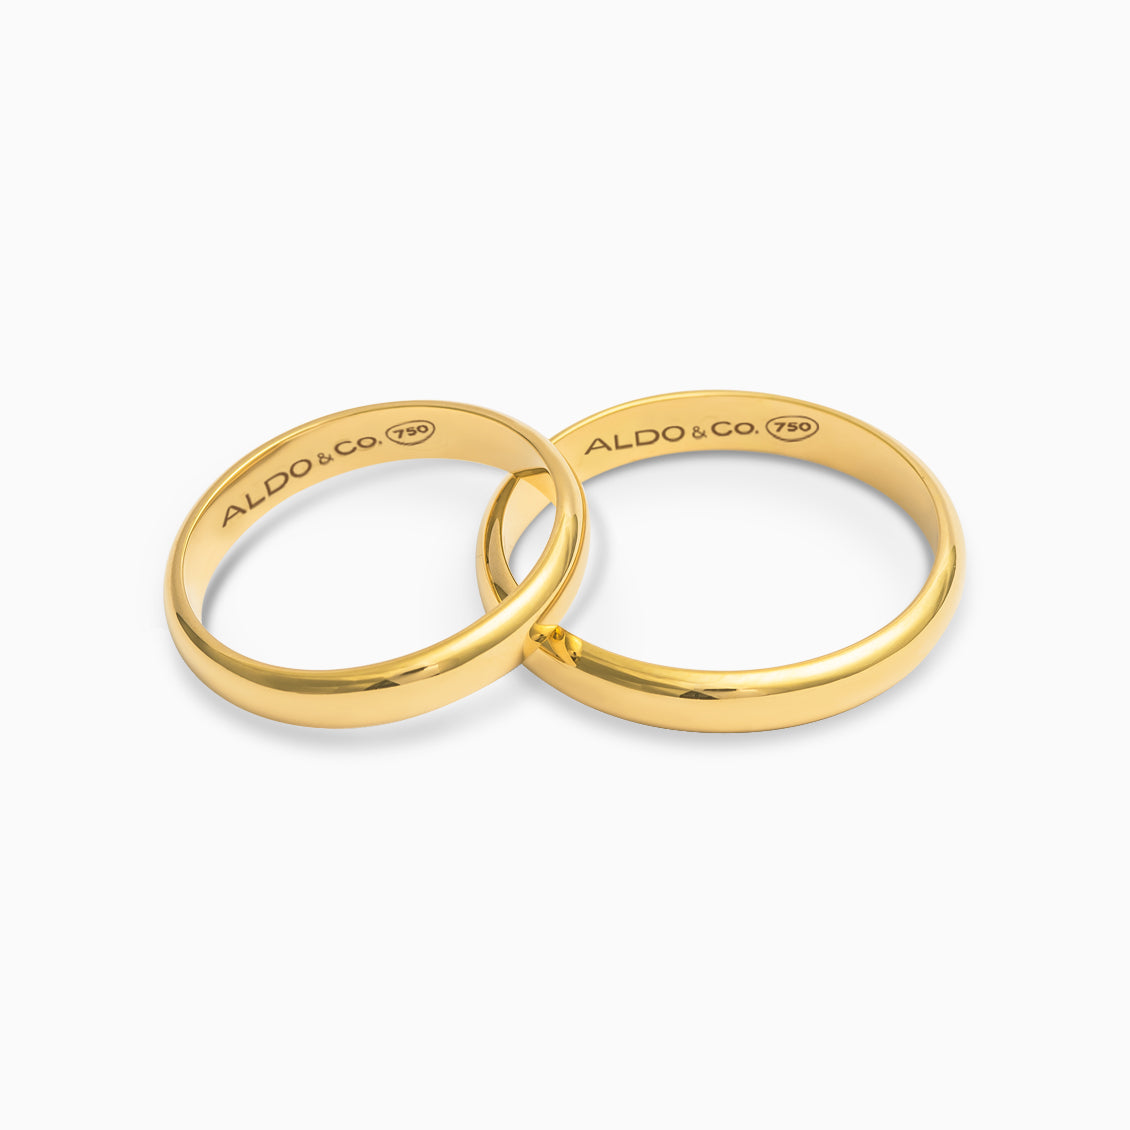 matrimoniales en oro amarillo de 18K - Aldo & Co.